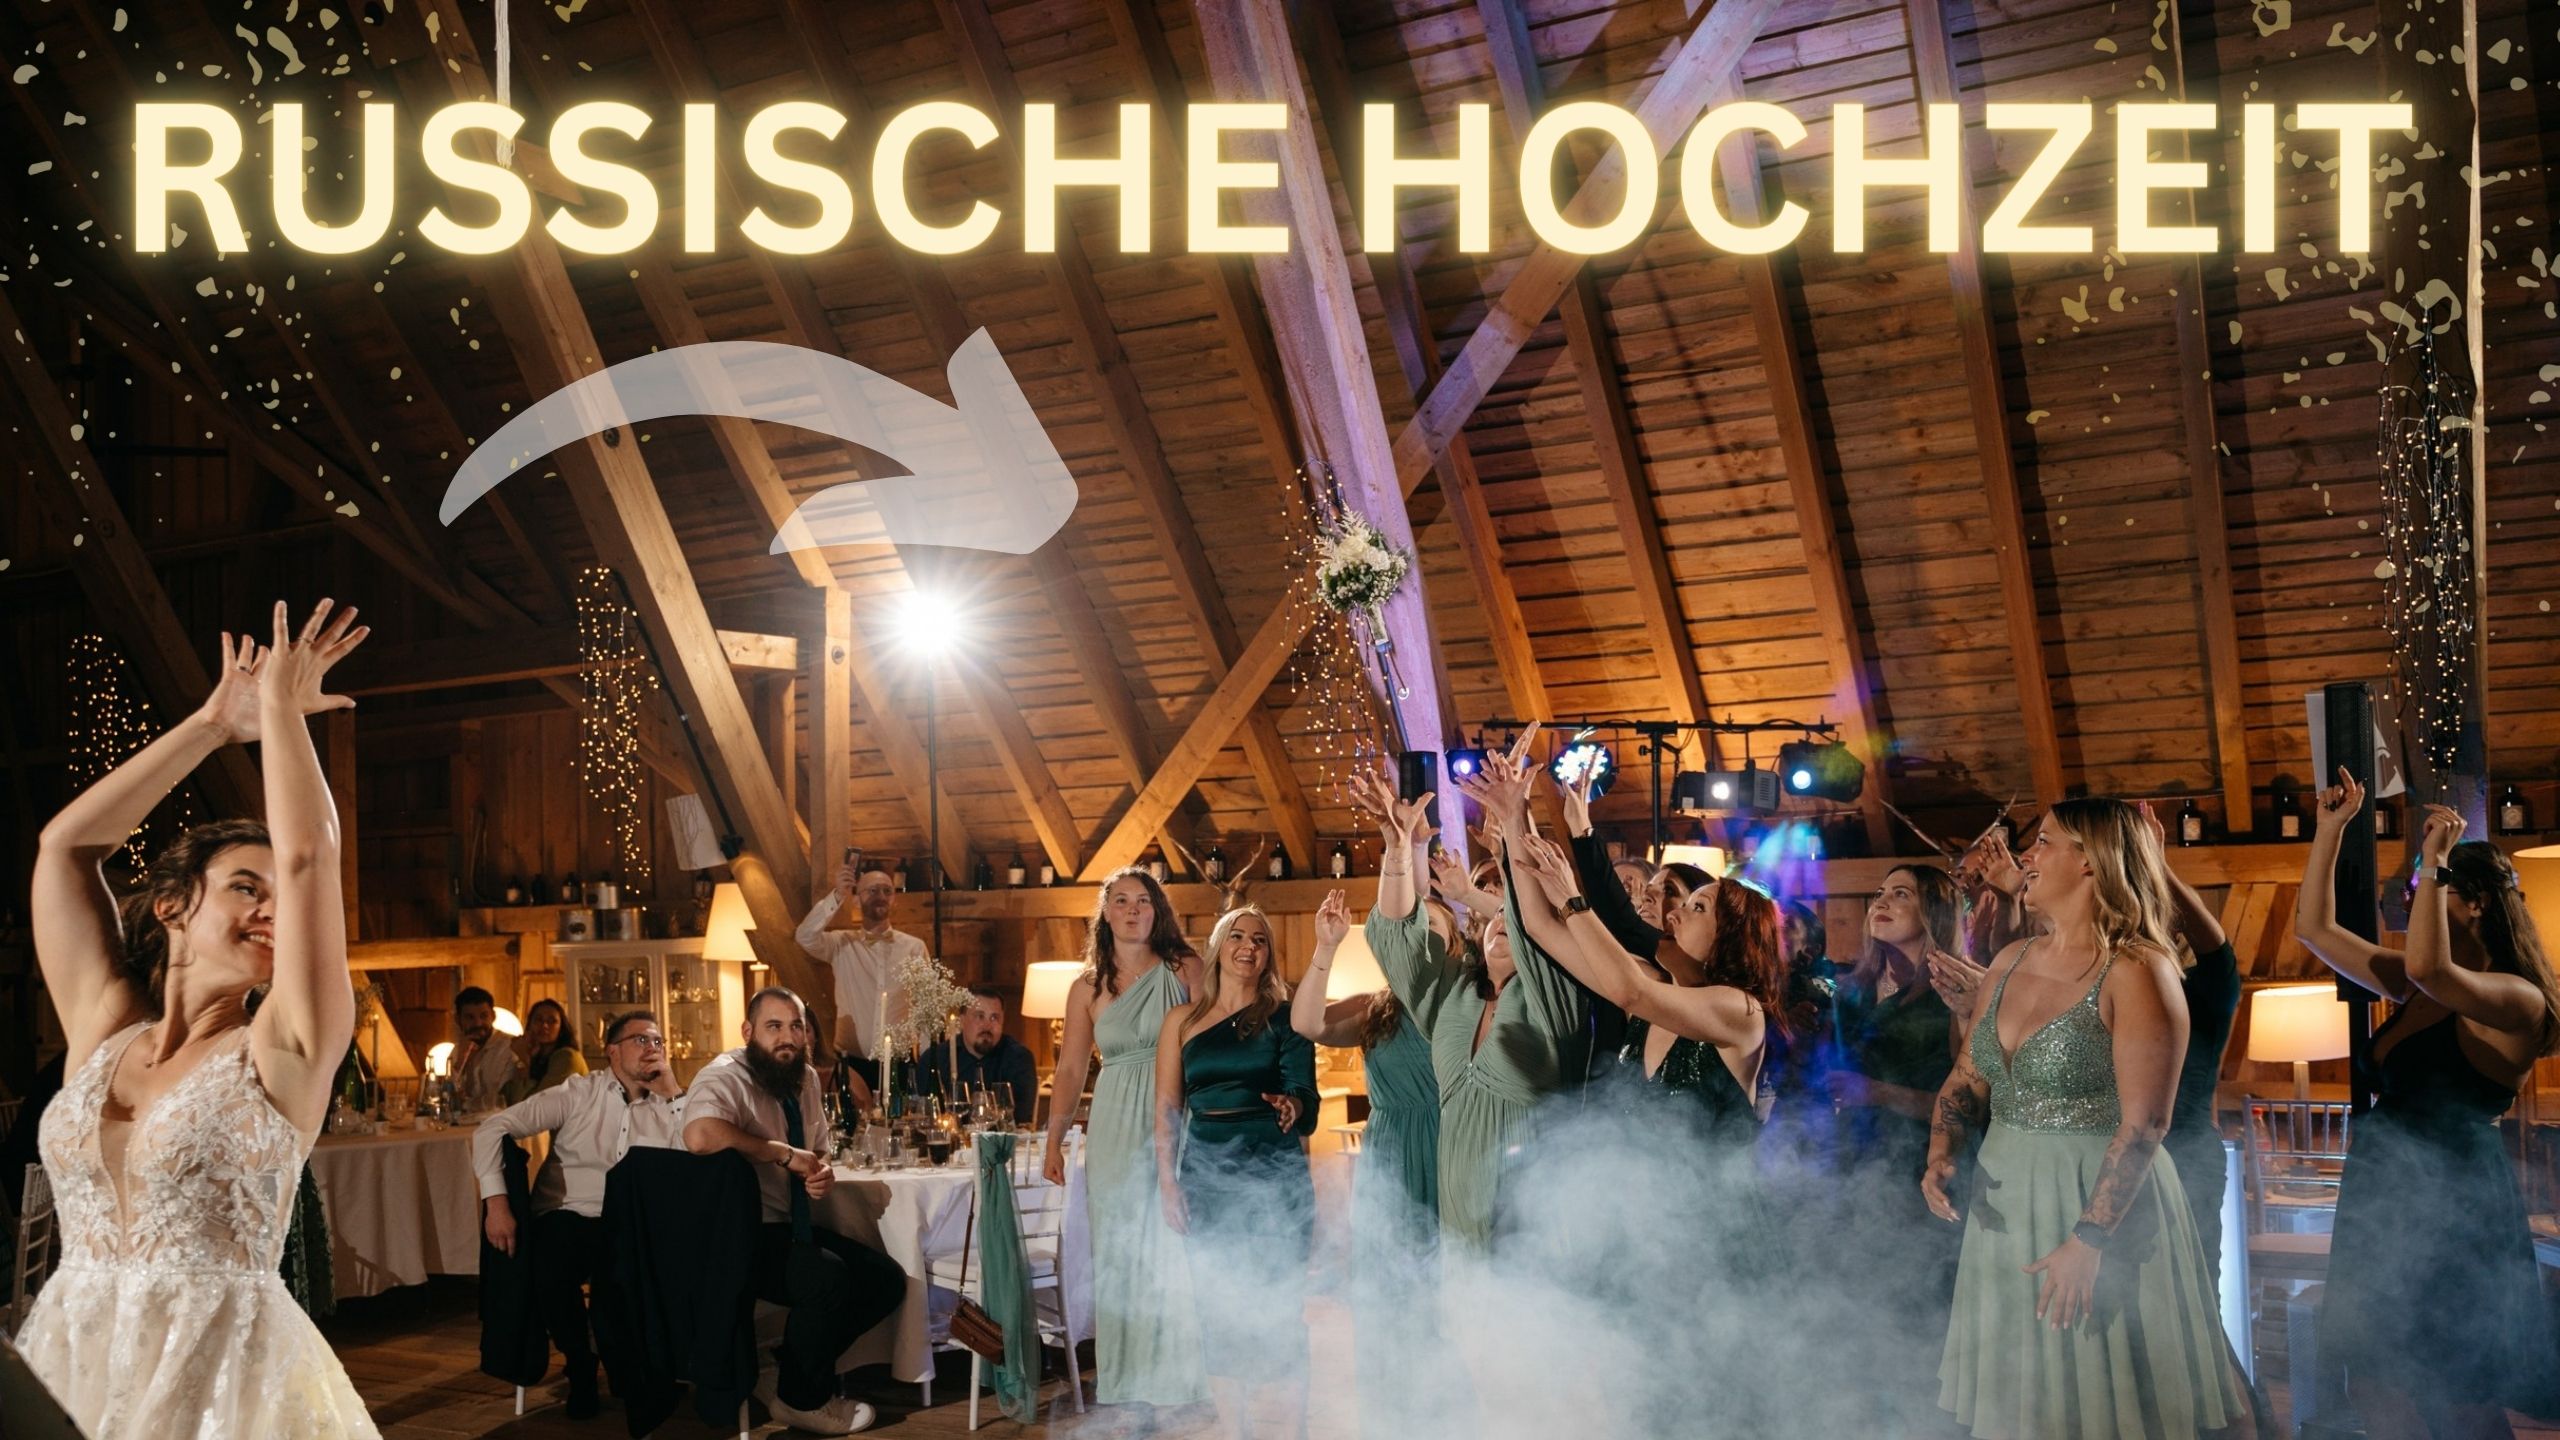 Russische Hochzeit - so feiern die Russen in Deutschland